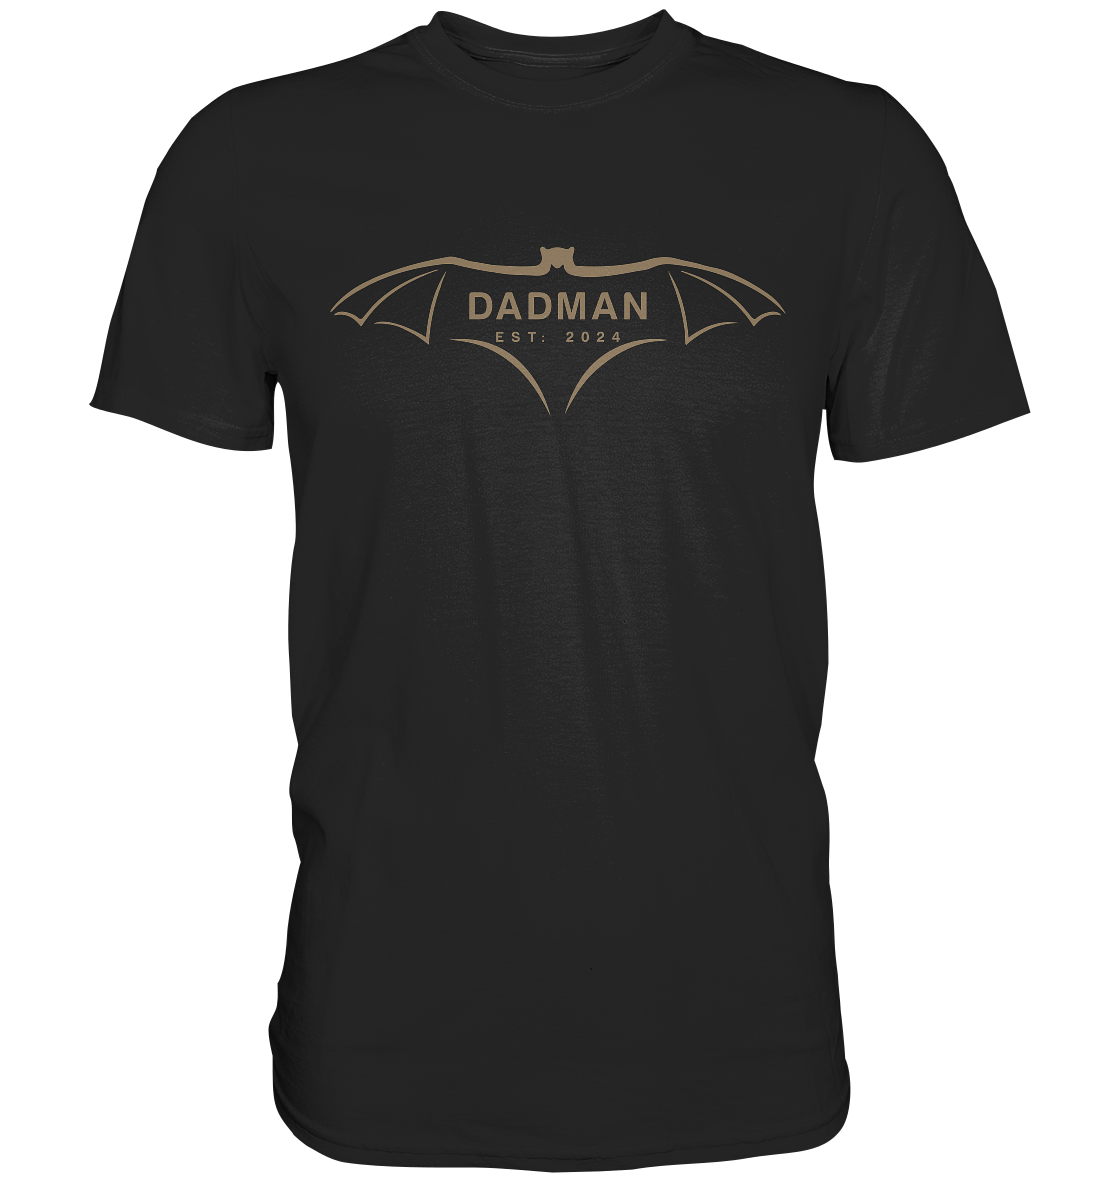 DADMAN 2024 Edición Premium, fecha personalizable - Camiseta Premium